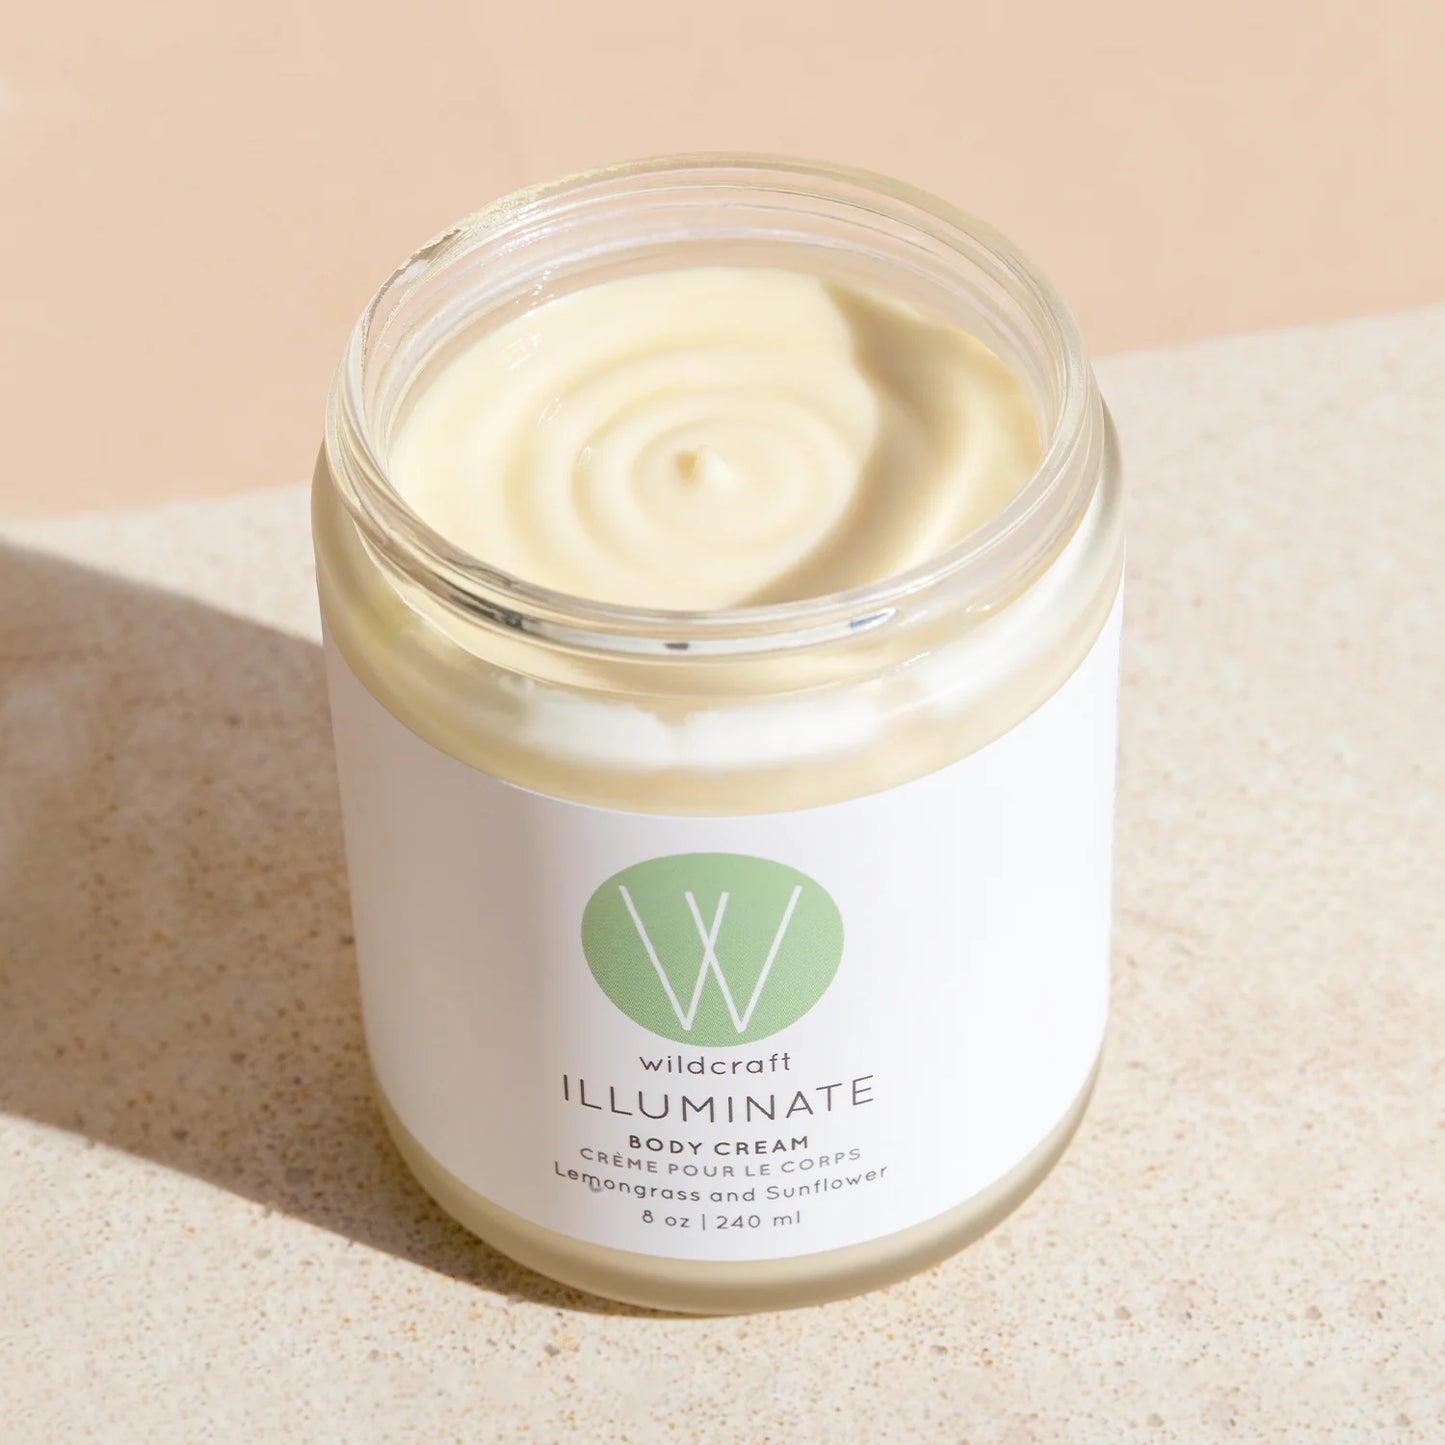 Illuminate Body Cream by Wildcraft - Lemongrass and Sunflower